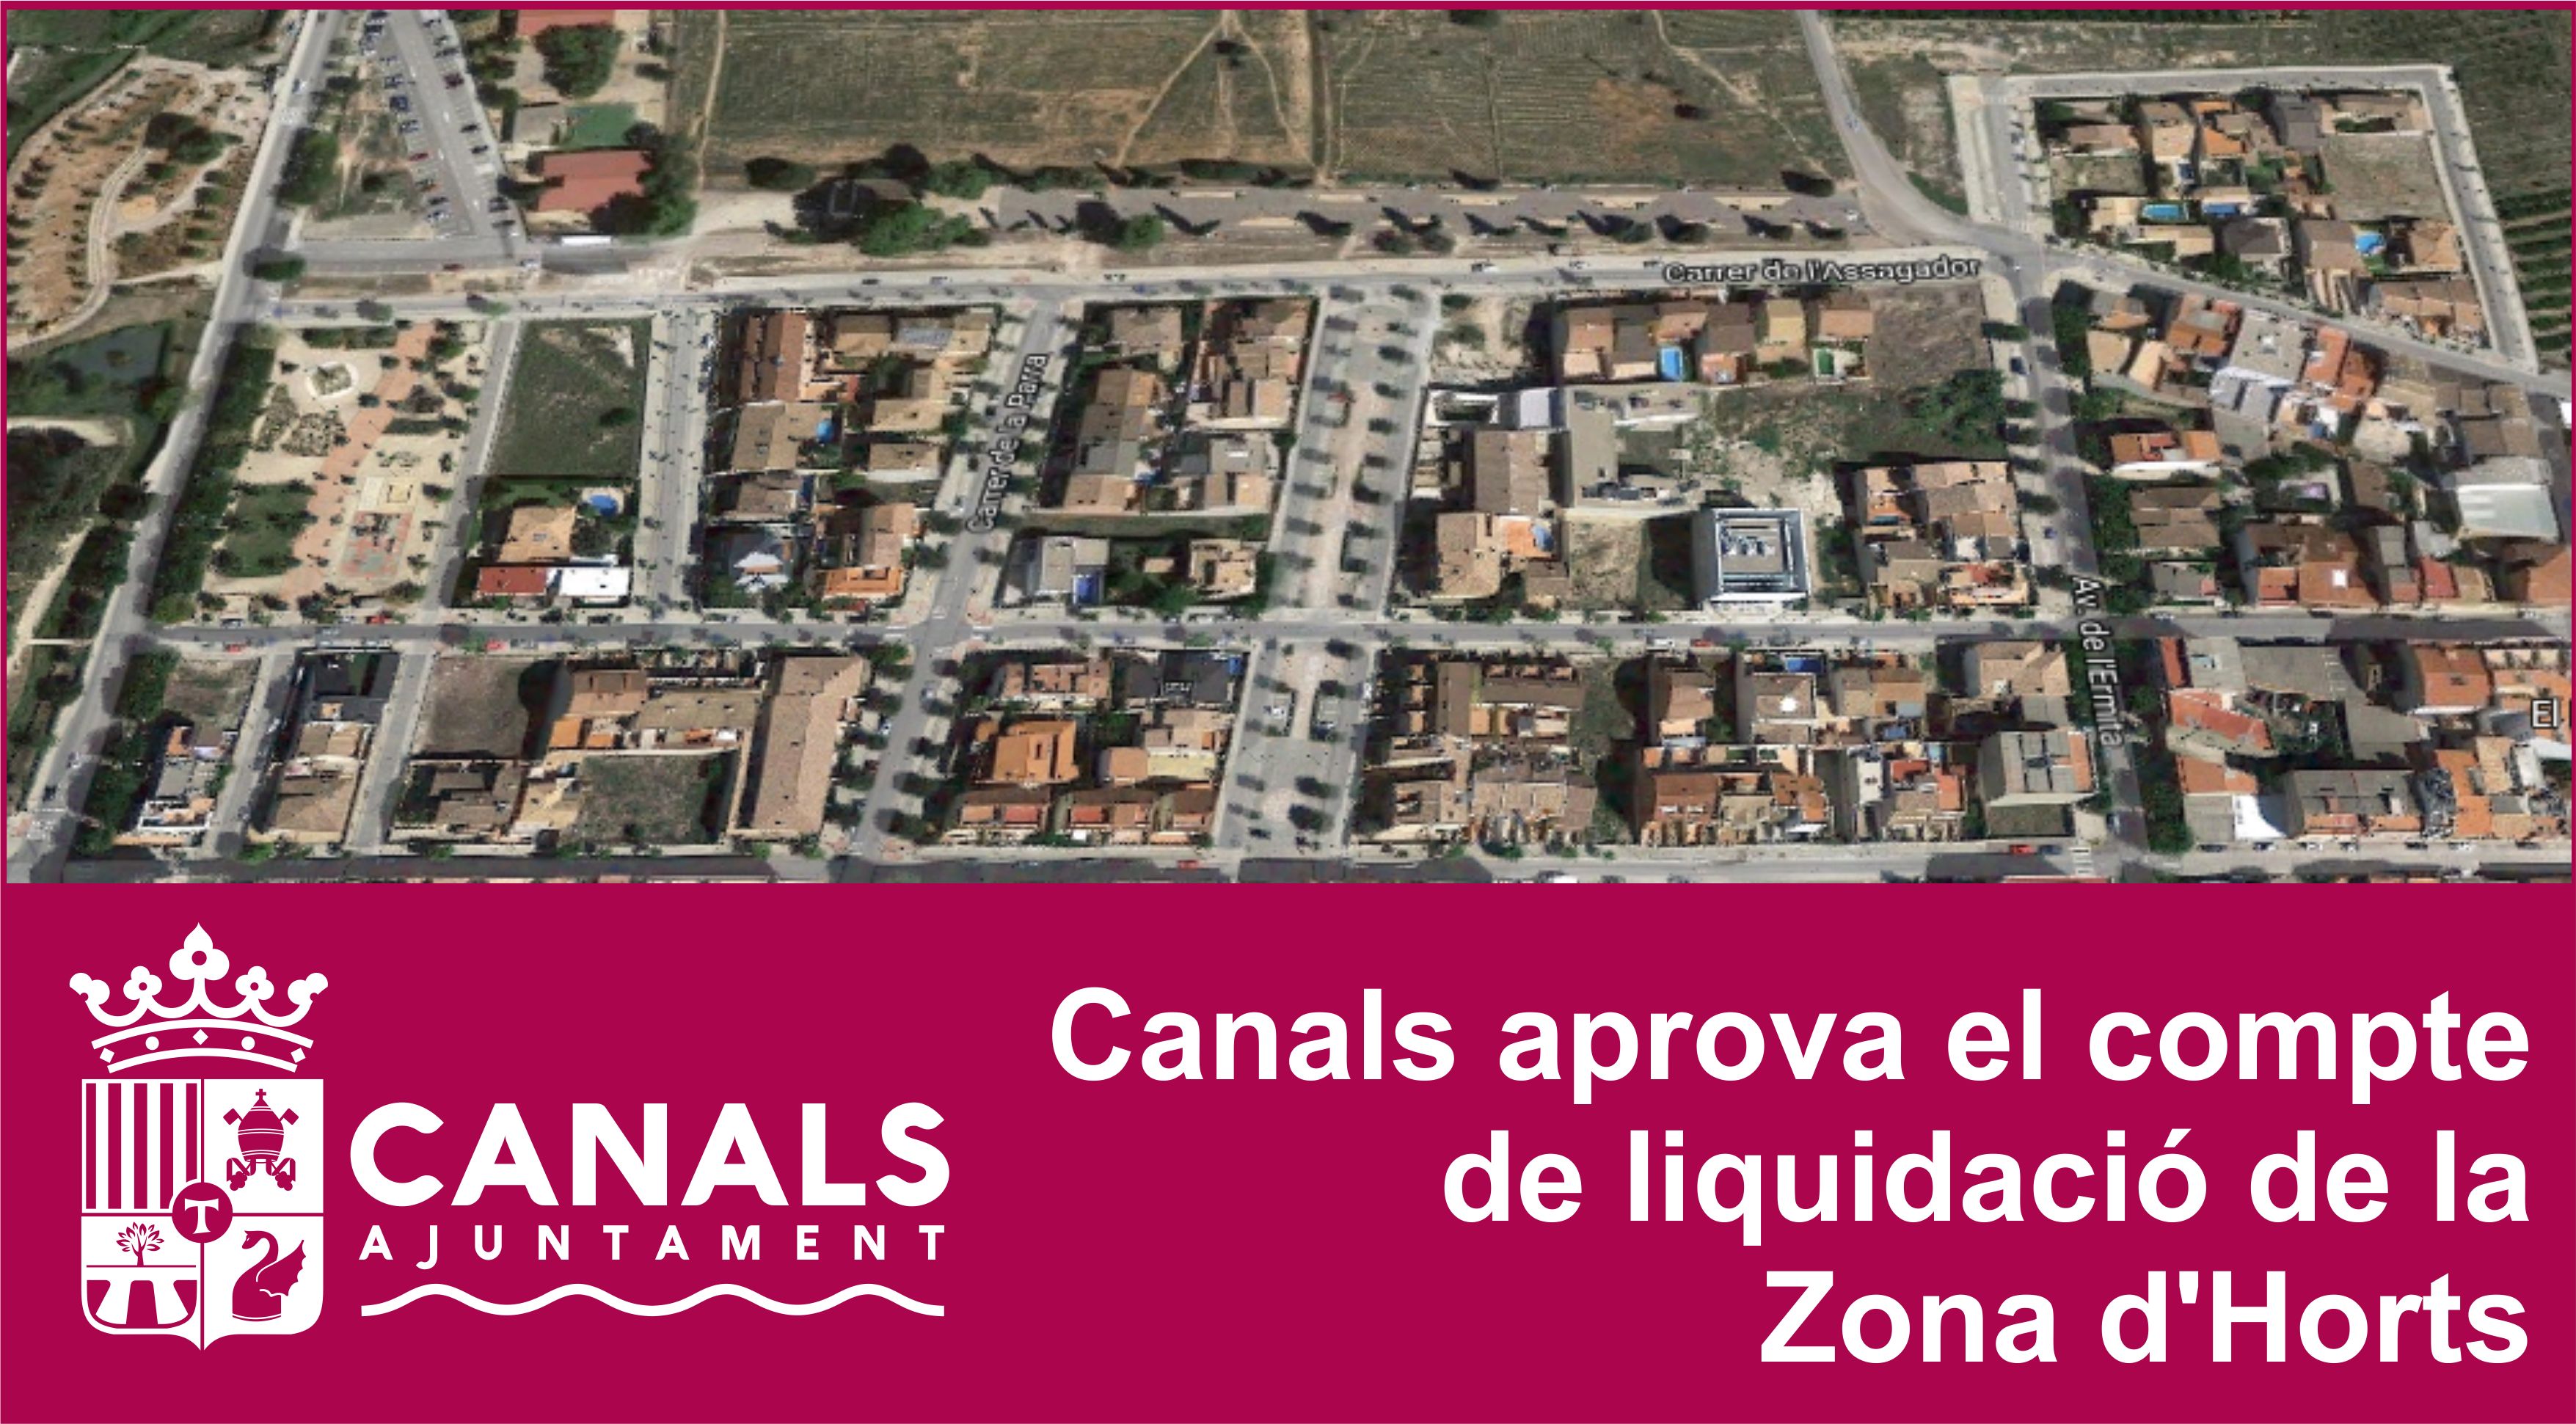 2017.05.15 Zona d'Horts liquidació. Ajuntament de Canals